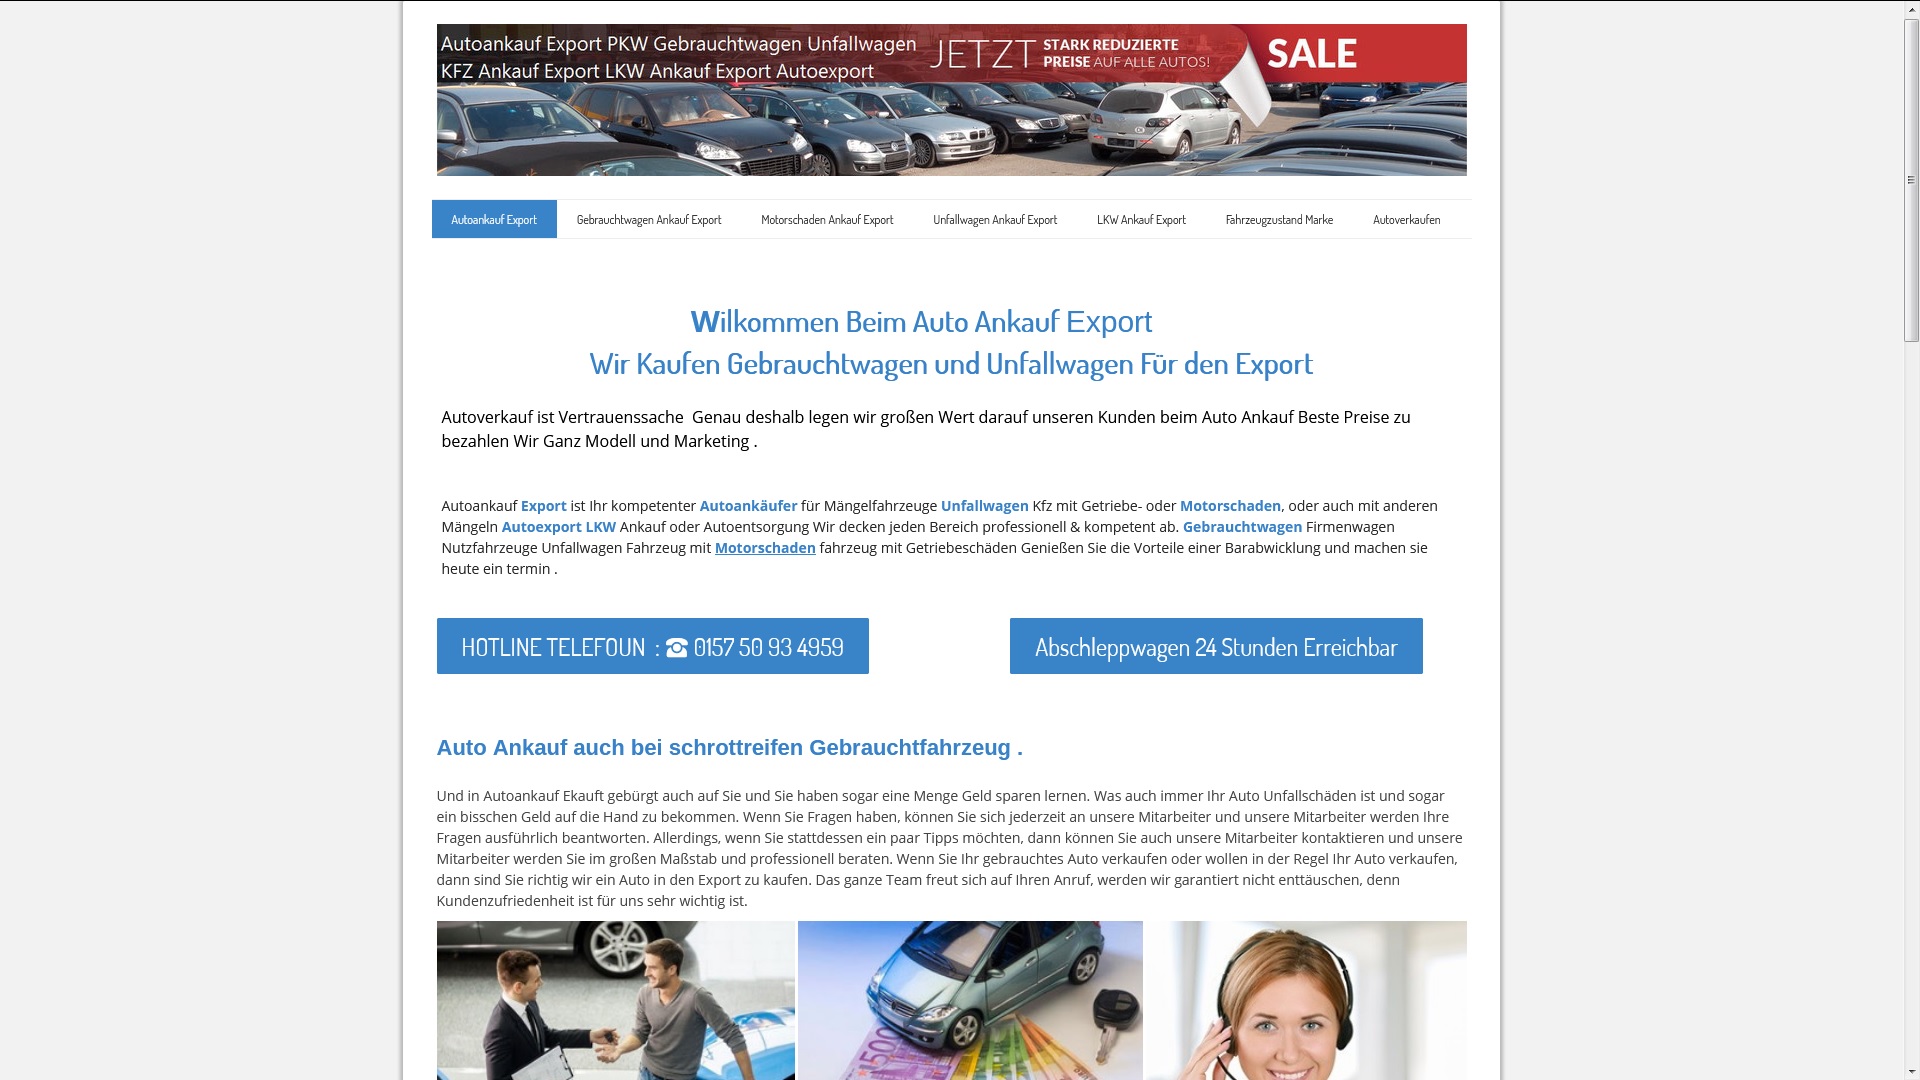 Autoankauf in Delmenhorst für Gebrauchtwagen & Lkw sowie Pkw Ankauf mit oder ohne Unfall